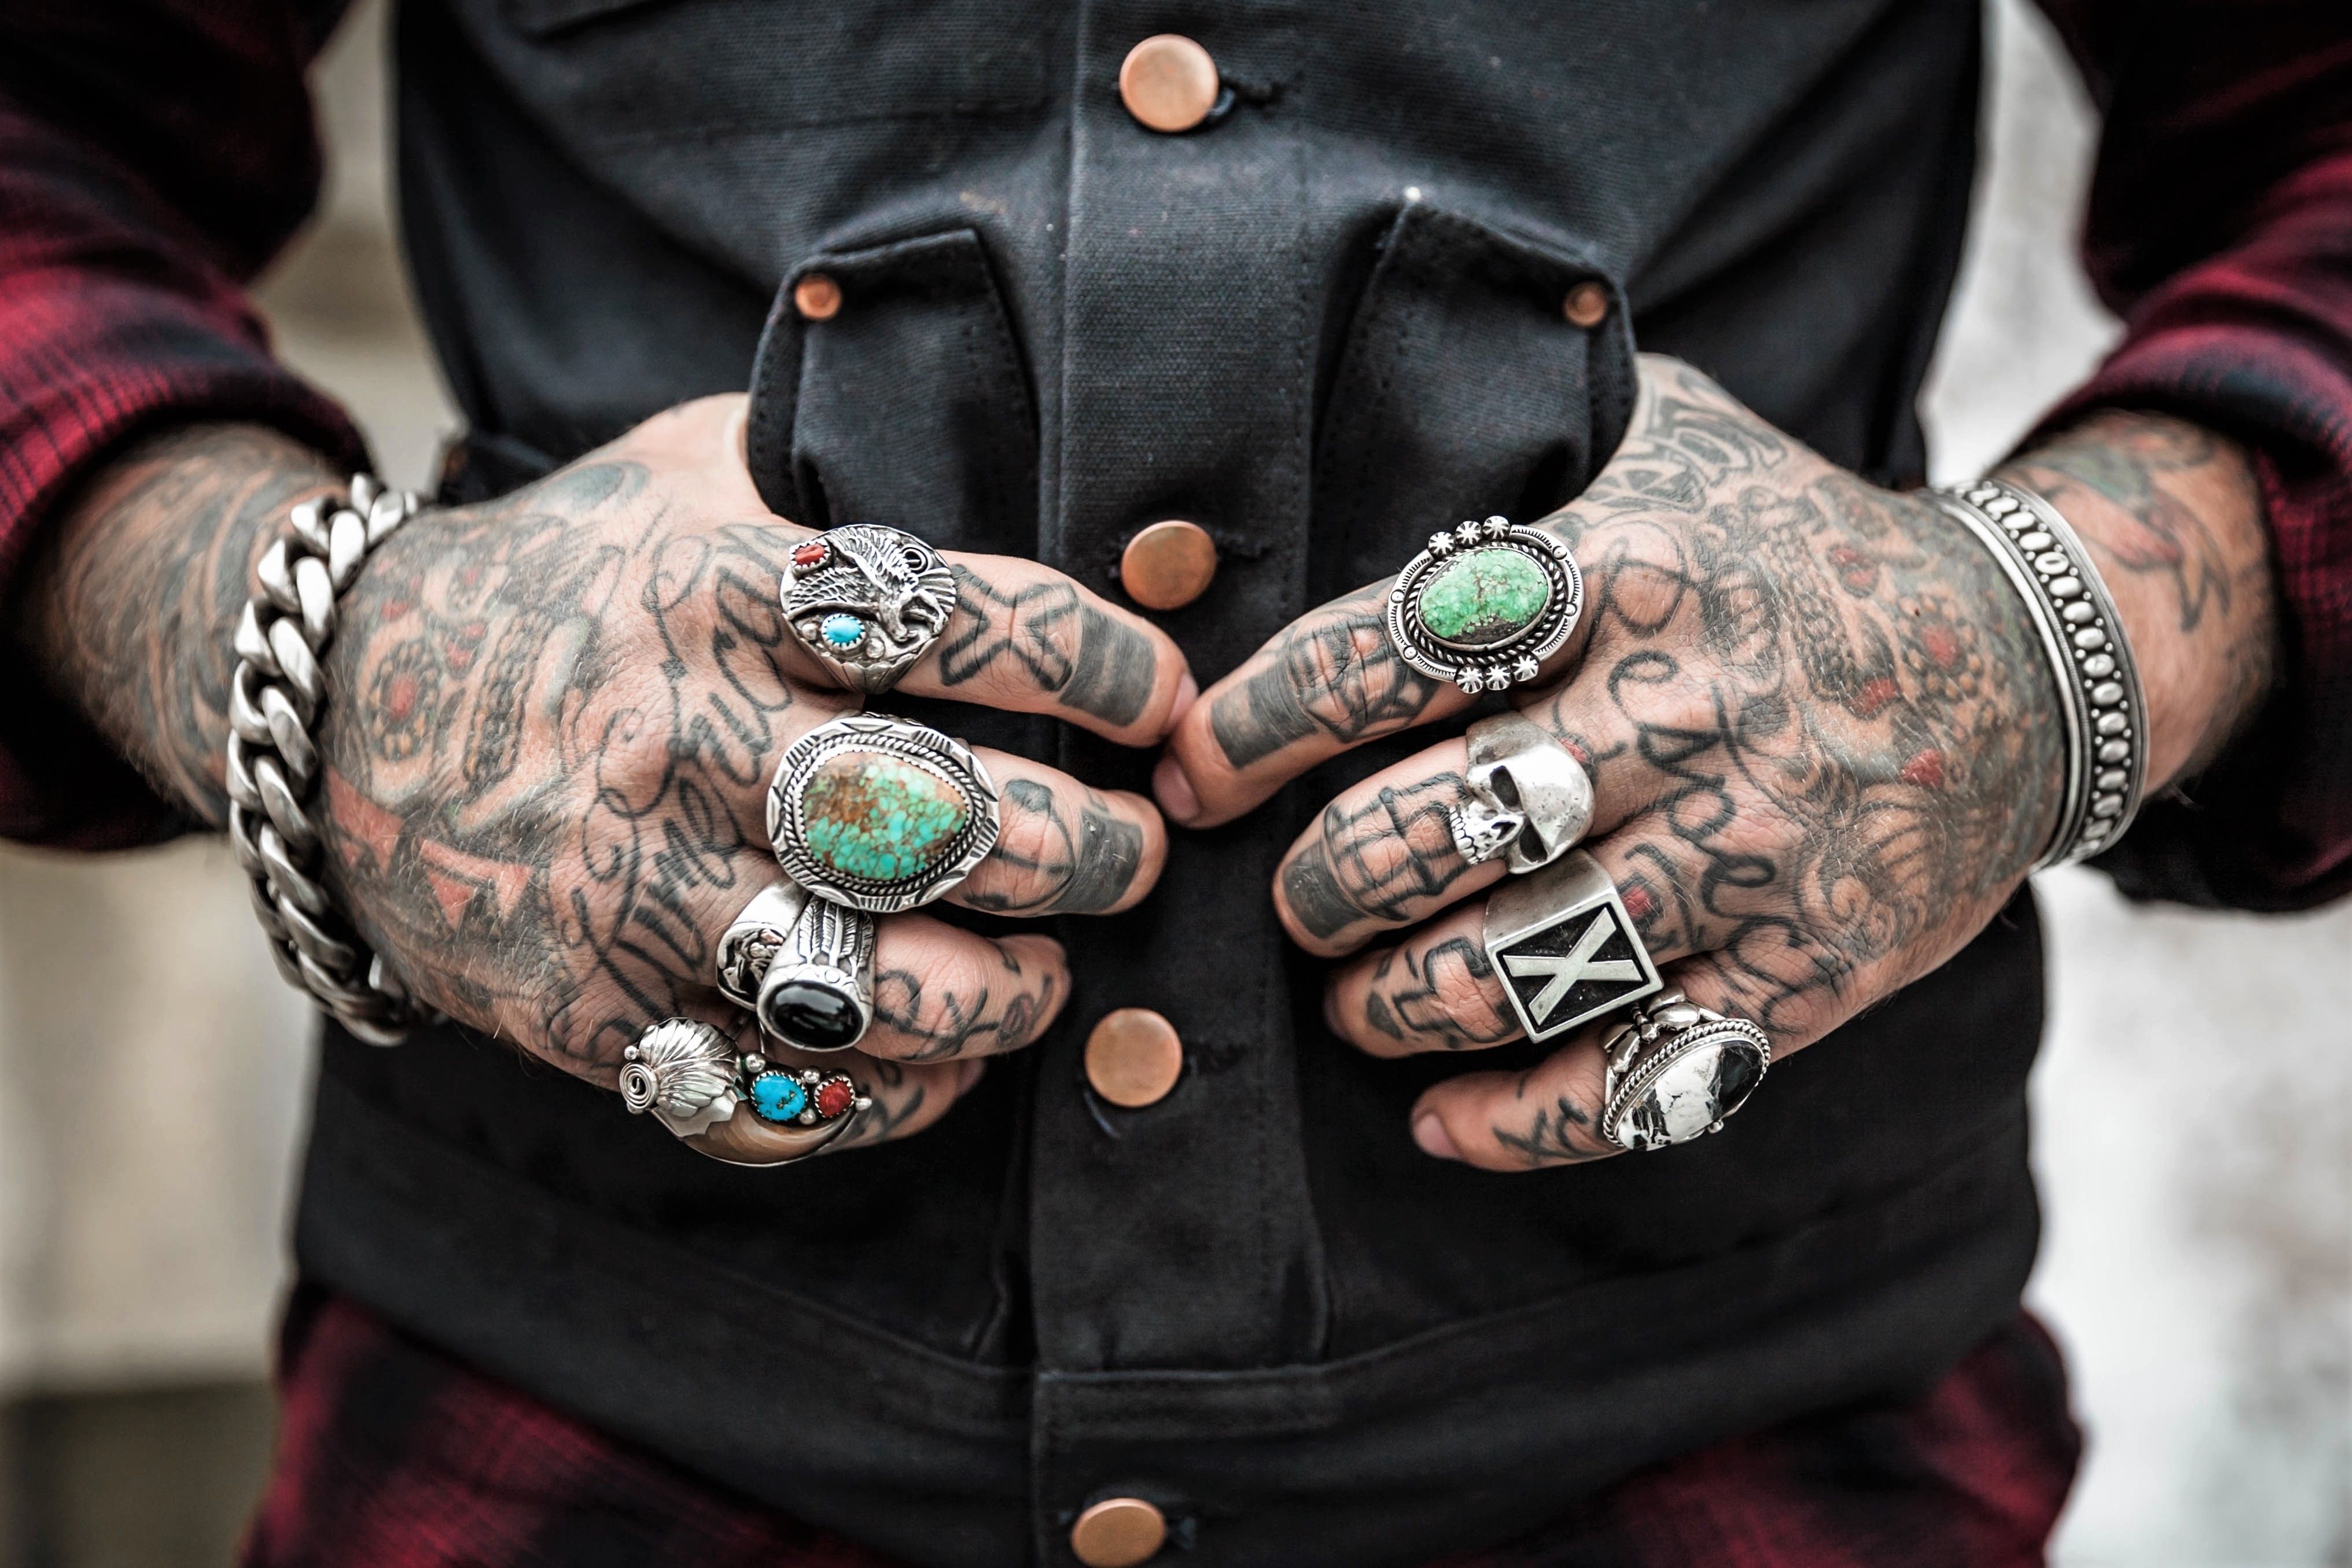 HD hand skull tattoo by Boston Rogoz  Tattoos